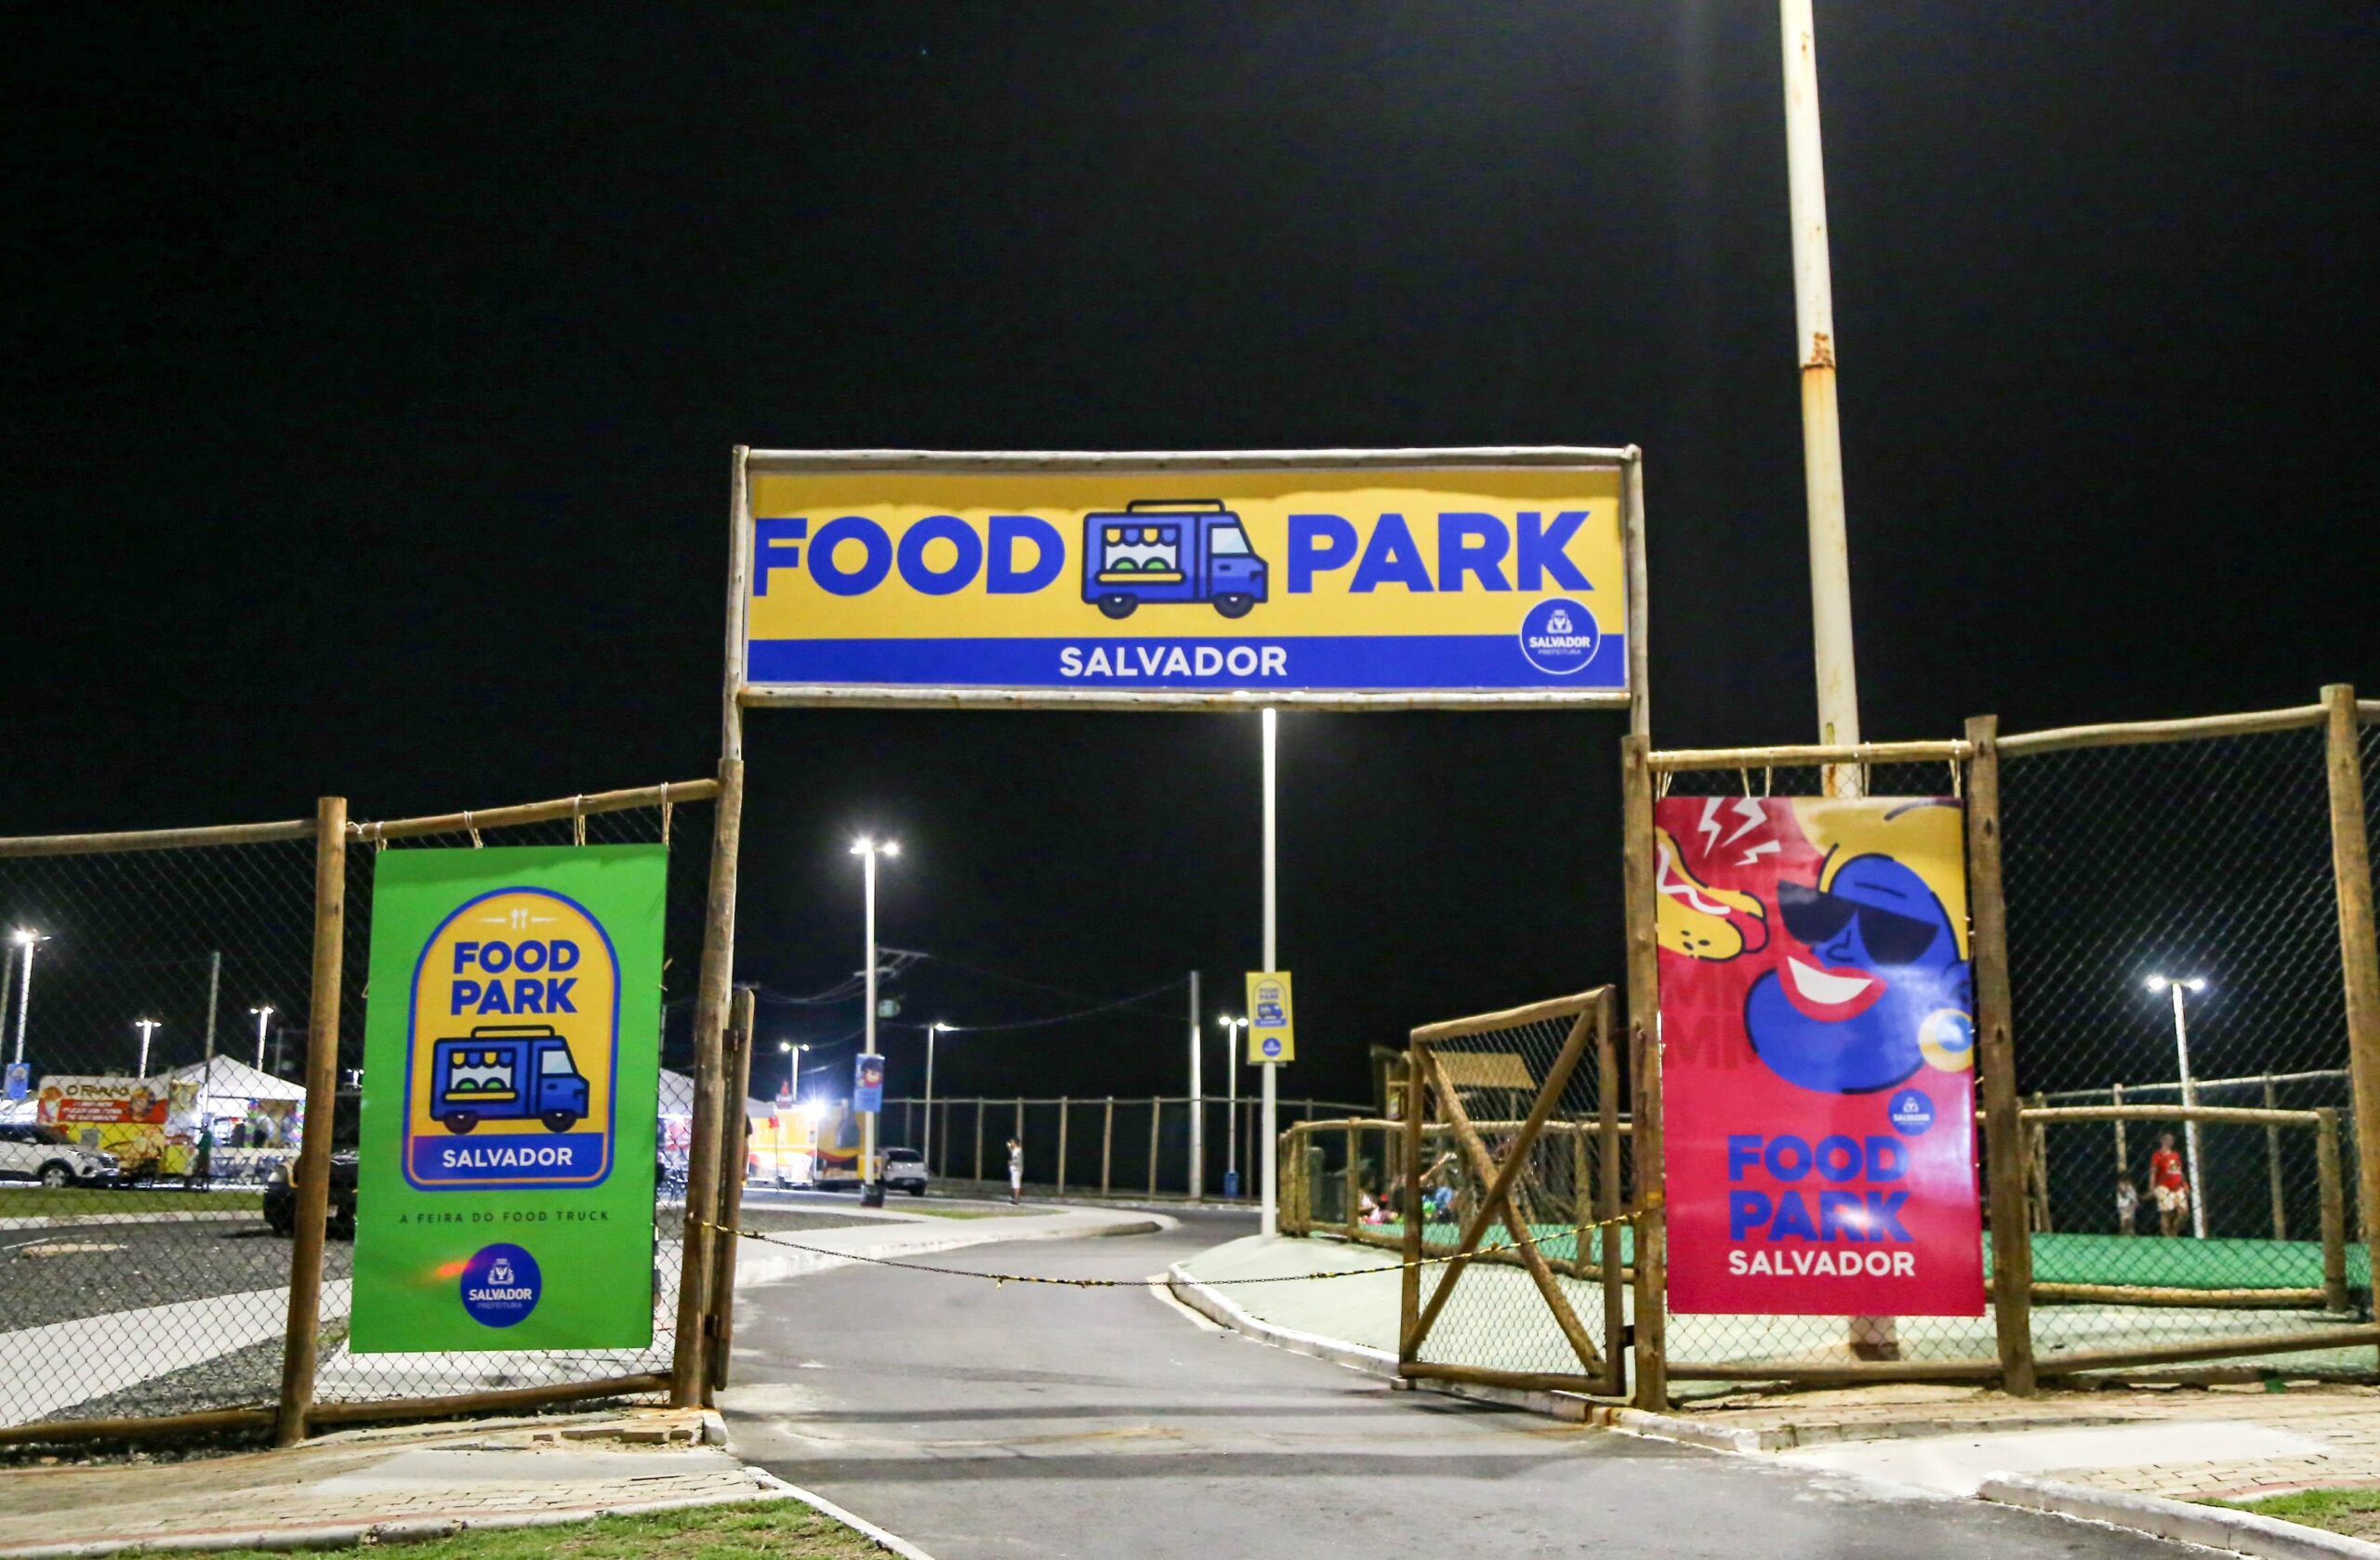 Food Park Salvador recebe atração infantil no próximo domingo (30)